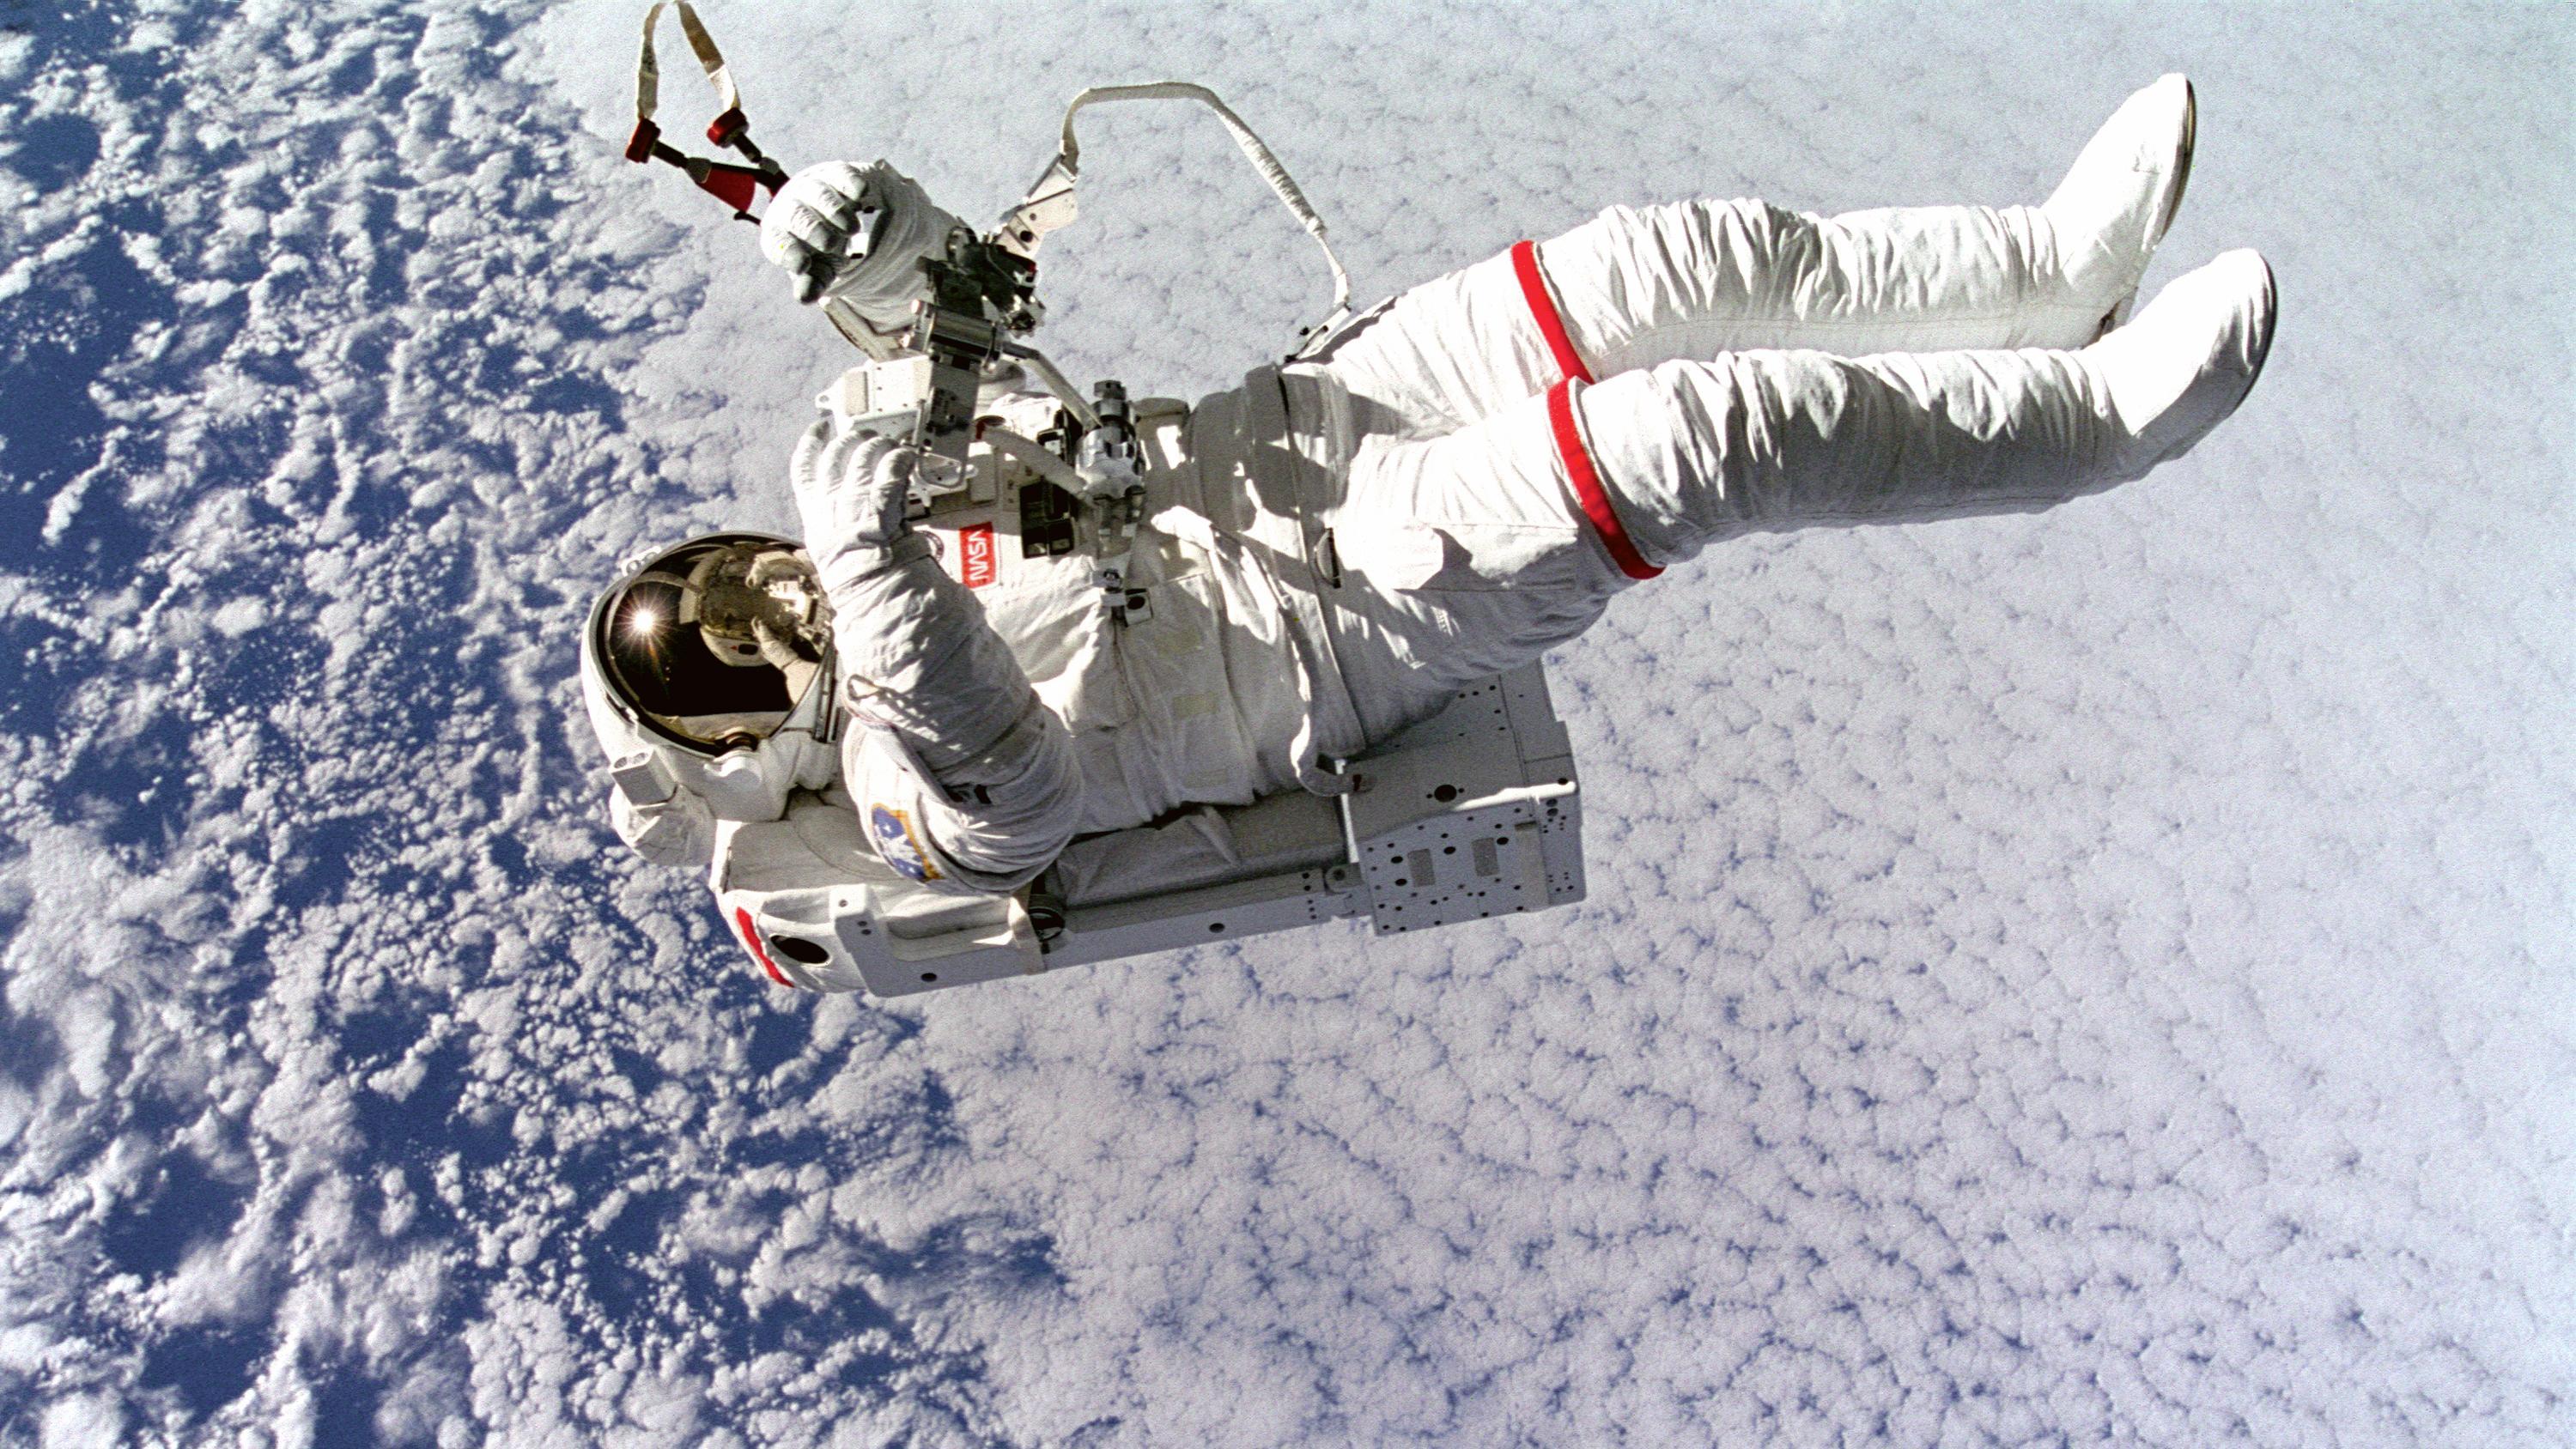 NASA Astronaut: Spacewalk Like Wall-E with 